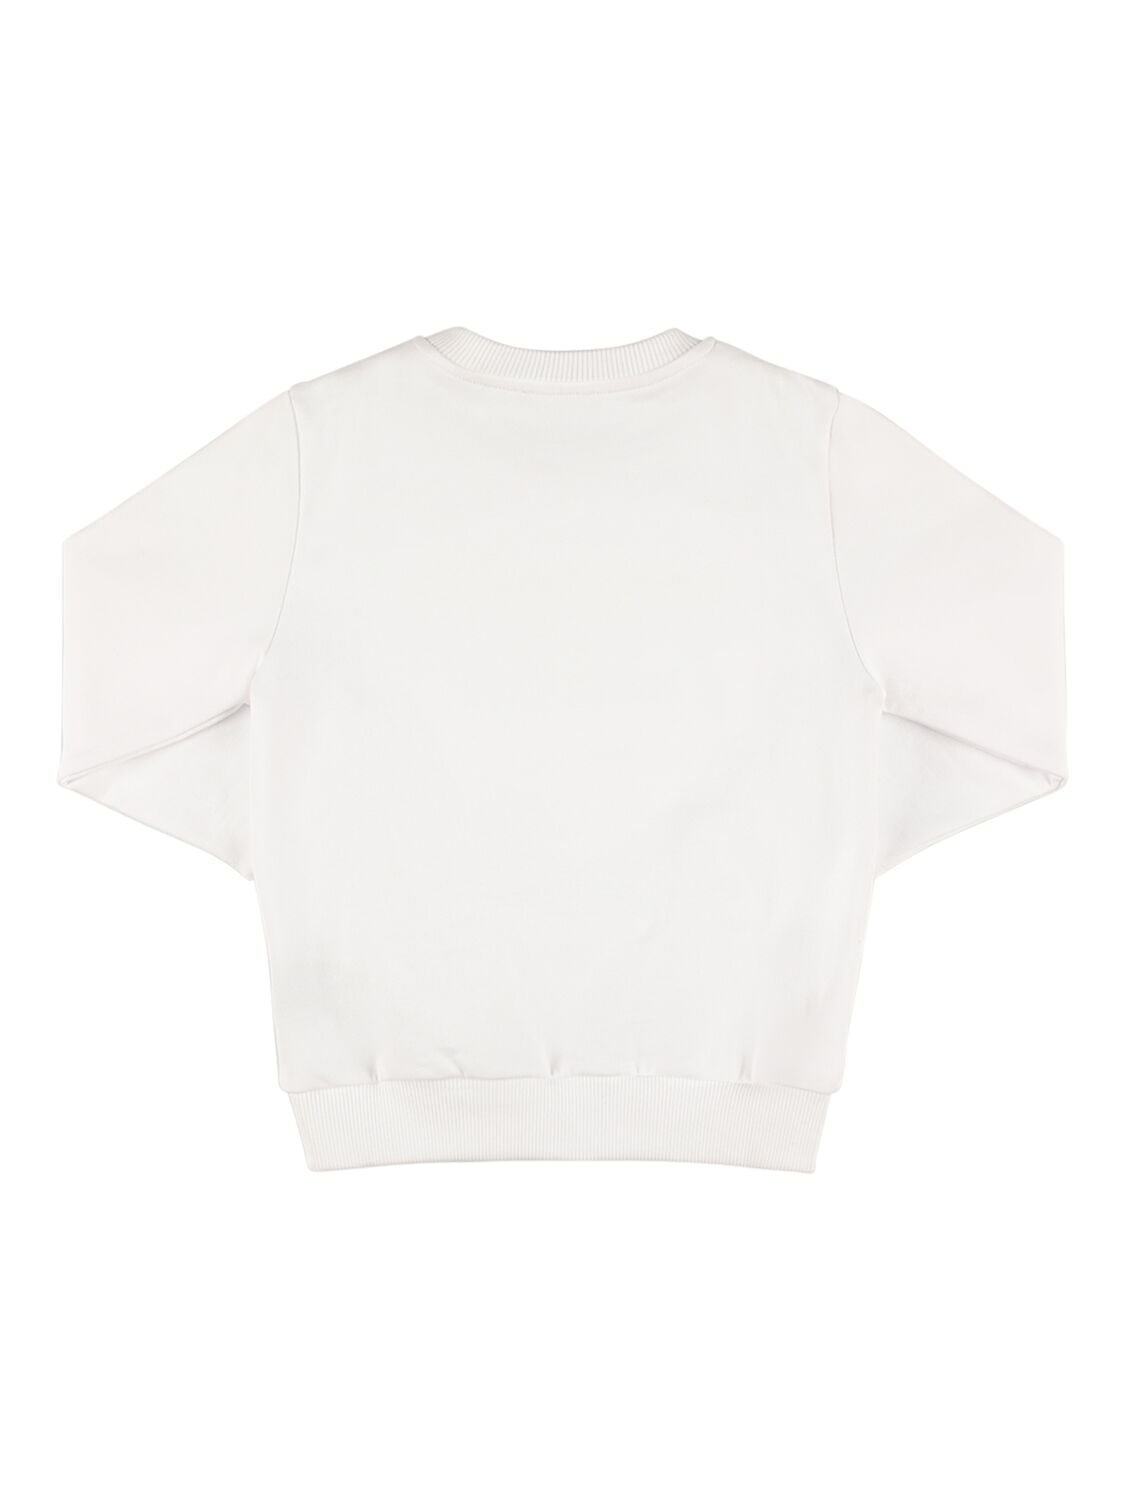 Shop Balmain Organic Cotton Sweatshirt In White,yellow